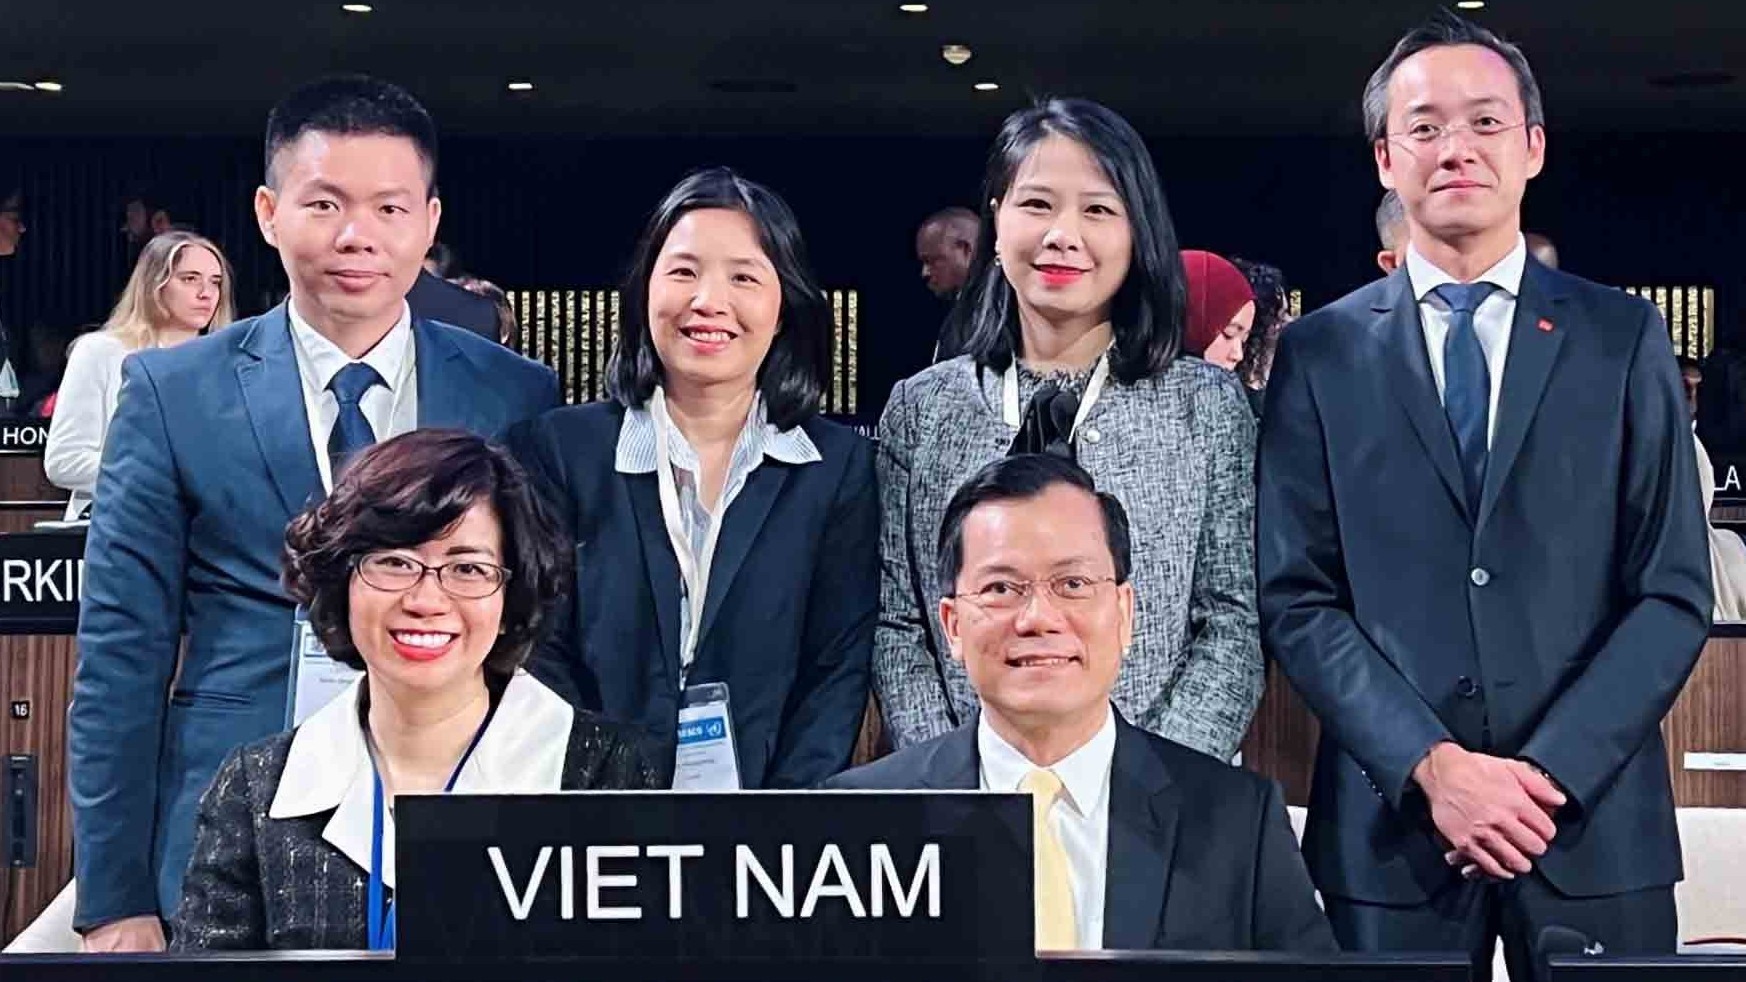 Thứ trưởng Hà Kim Ngọc: Đảm đương nhiệm vụ Phó Chủ tịch Đại hội đồng là cơ hội tốt để Việt Nam thể hiện 'trách nhiệm kép' tại UNESCO